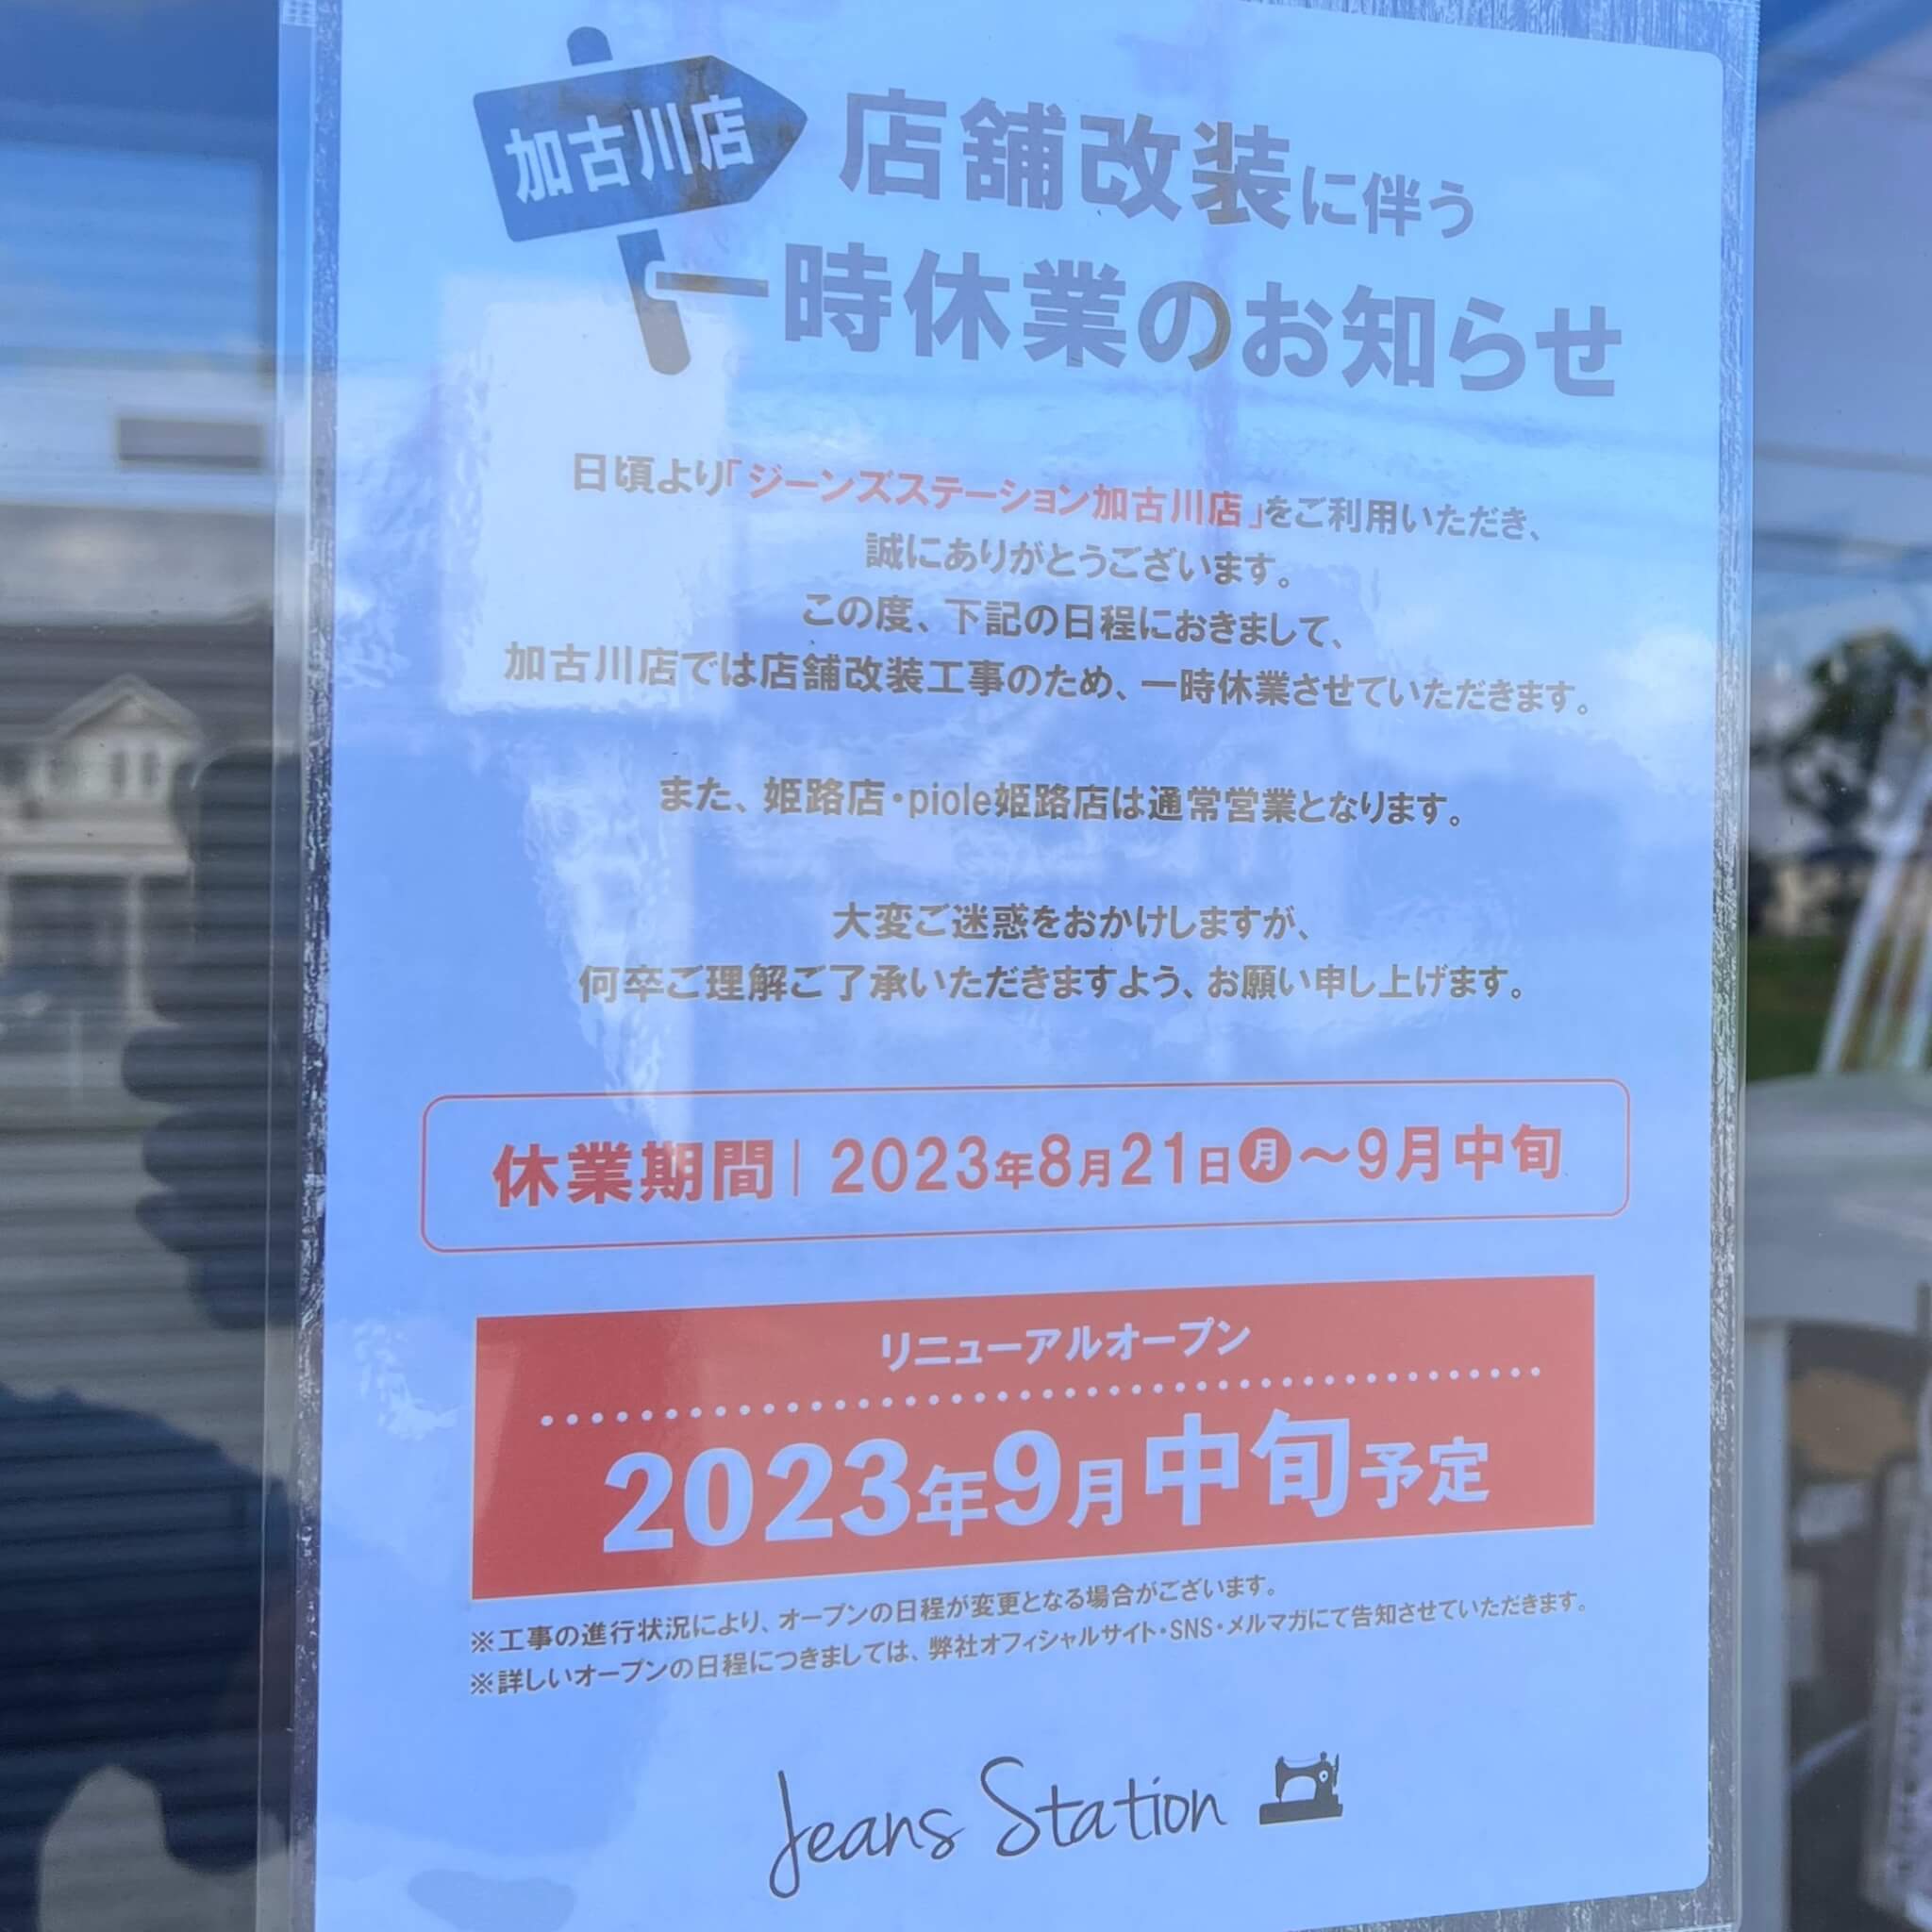 ジーンズステーション加古川店店舗改装に伴う一時休業のお知らせ